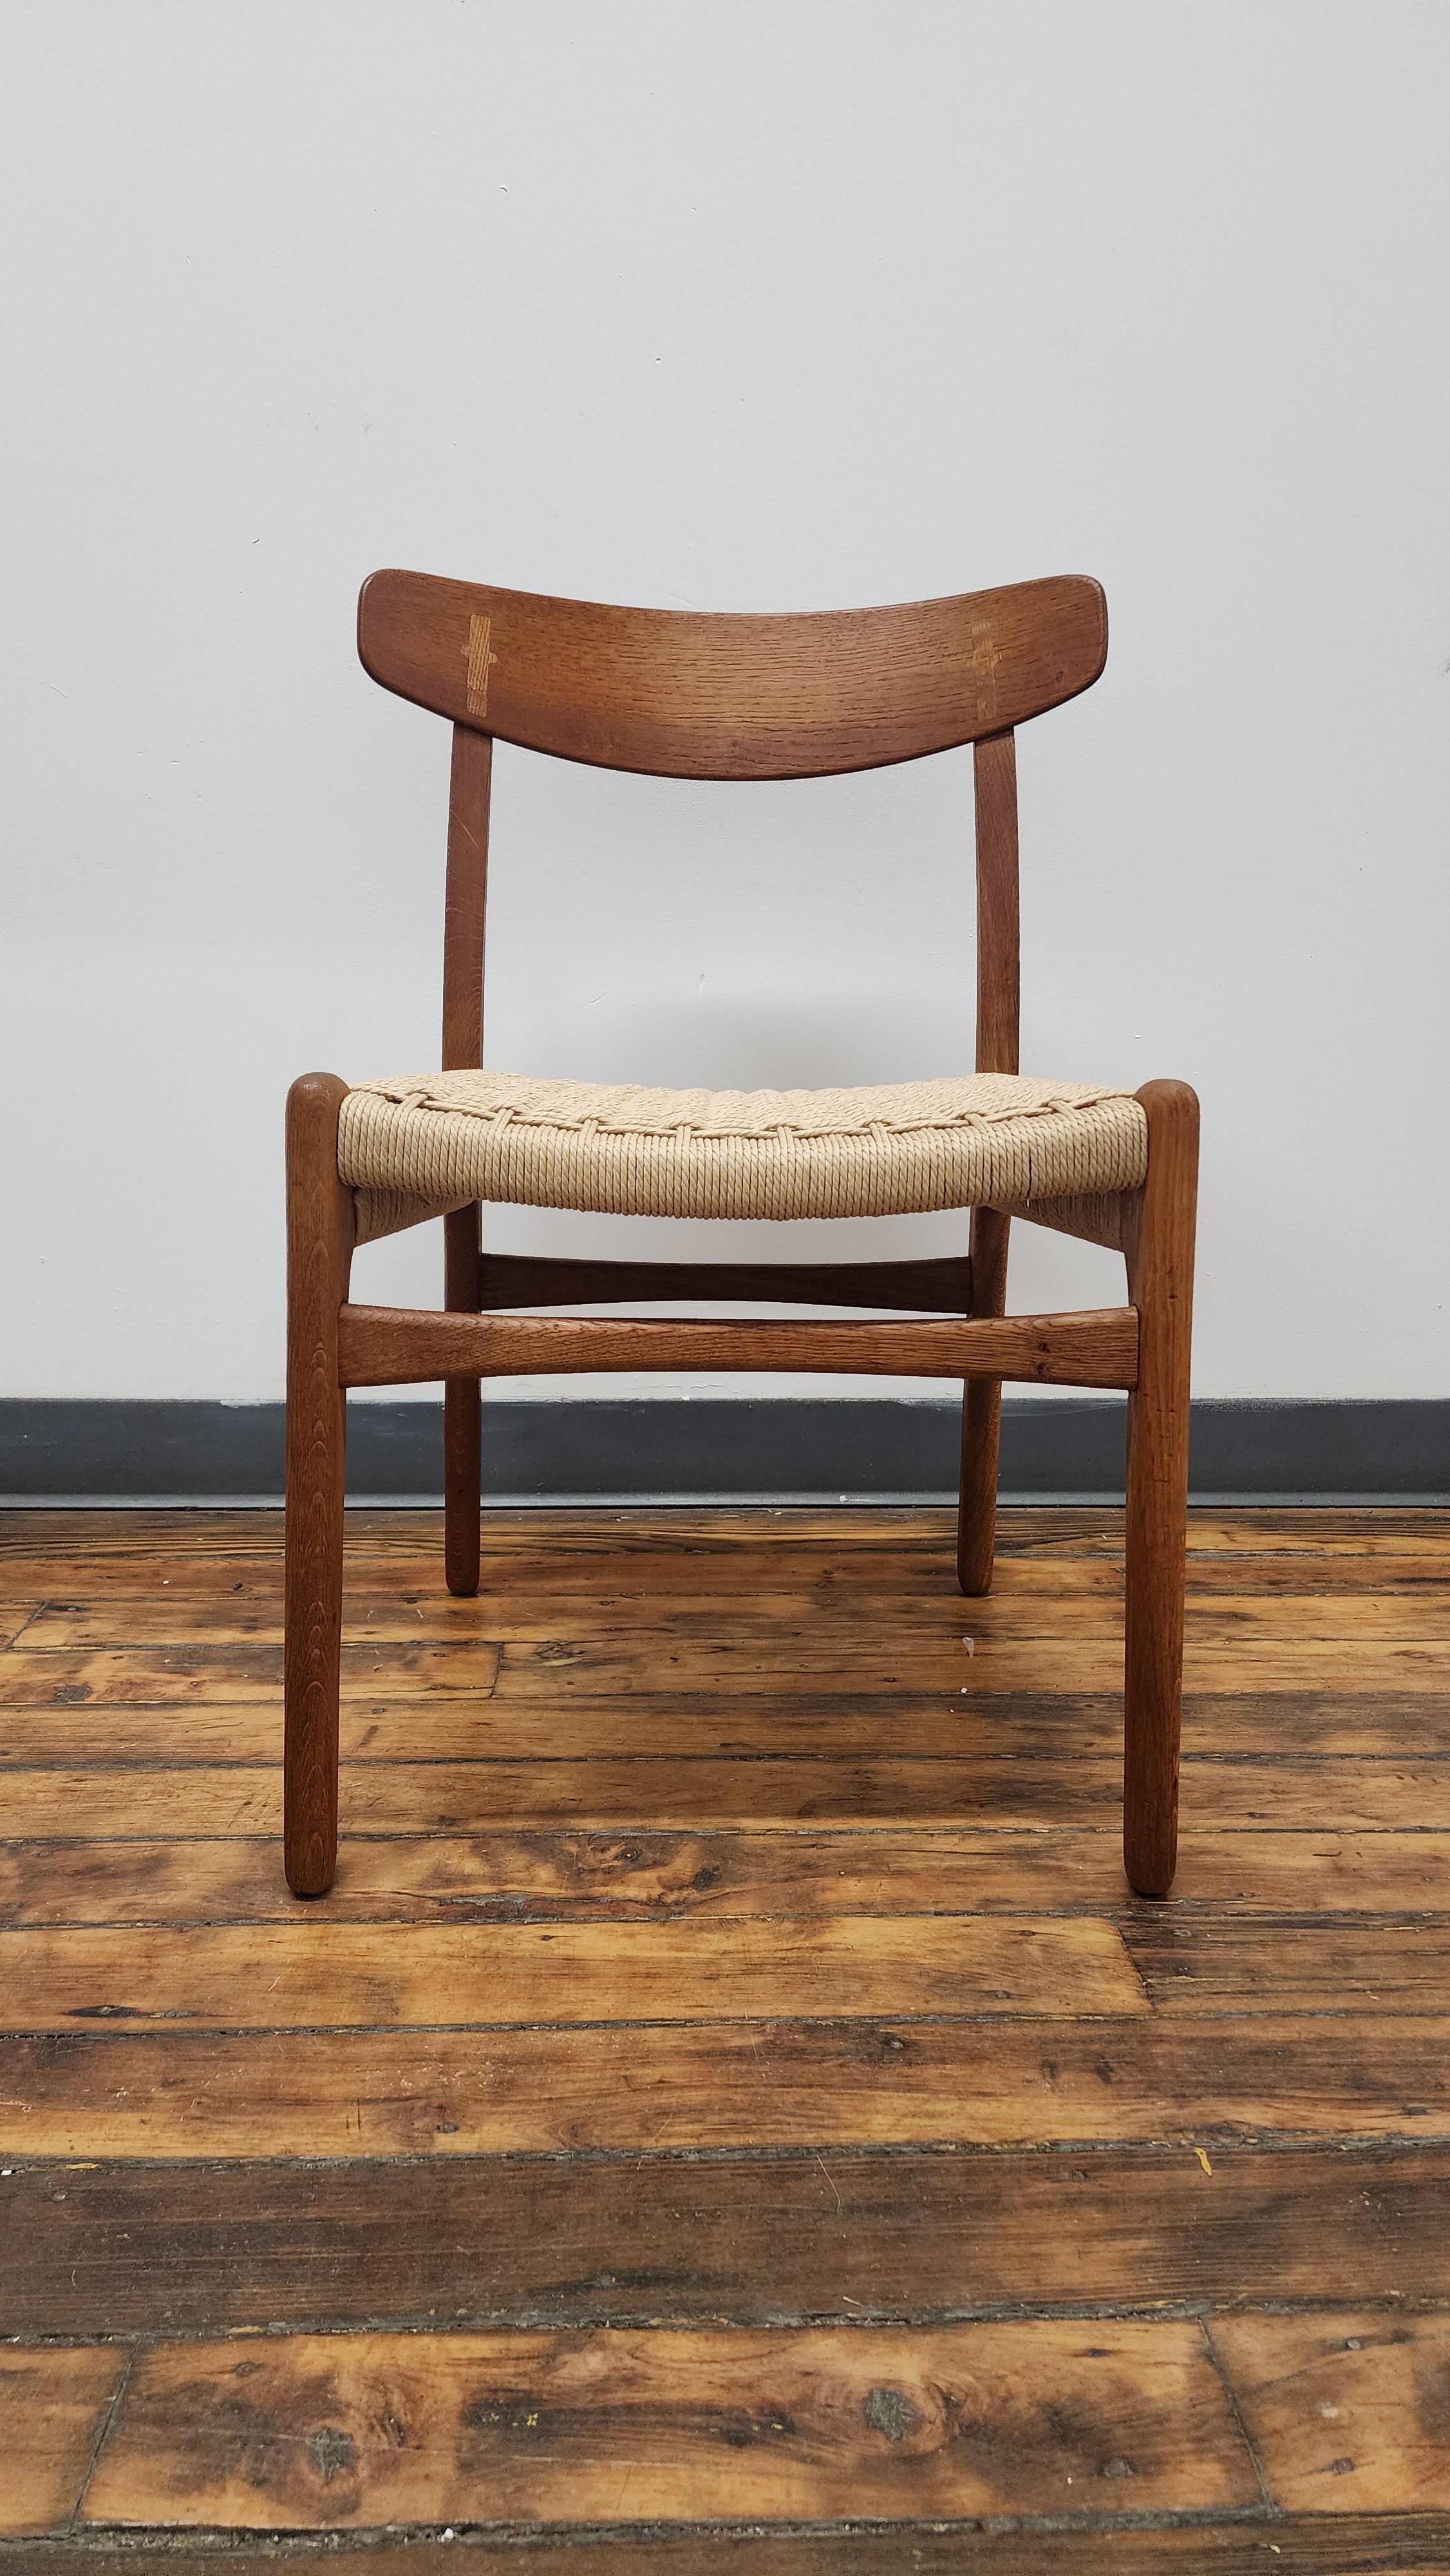 Schöne Eiche und Teakholz Beistellstuhl Modell CH23 für Carl Hansen & Son von Hans Wegner. dieses zeitlose Design eines der bekanntesten Entwürfe von Esszimmerstühlen. sie verfügen über Eichenrahmen mit gebogenen Holzrückenlehnen mit dem klassischen